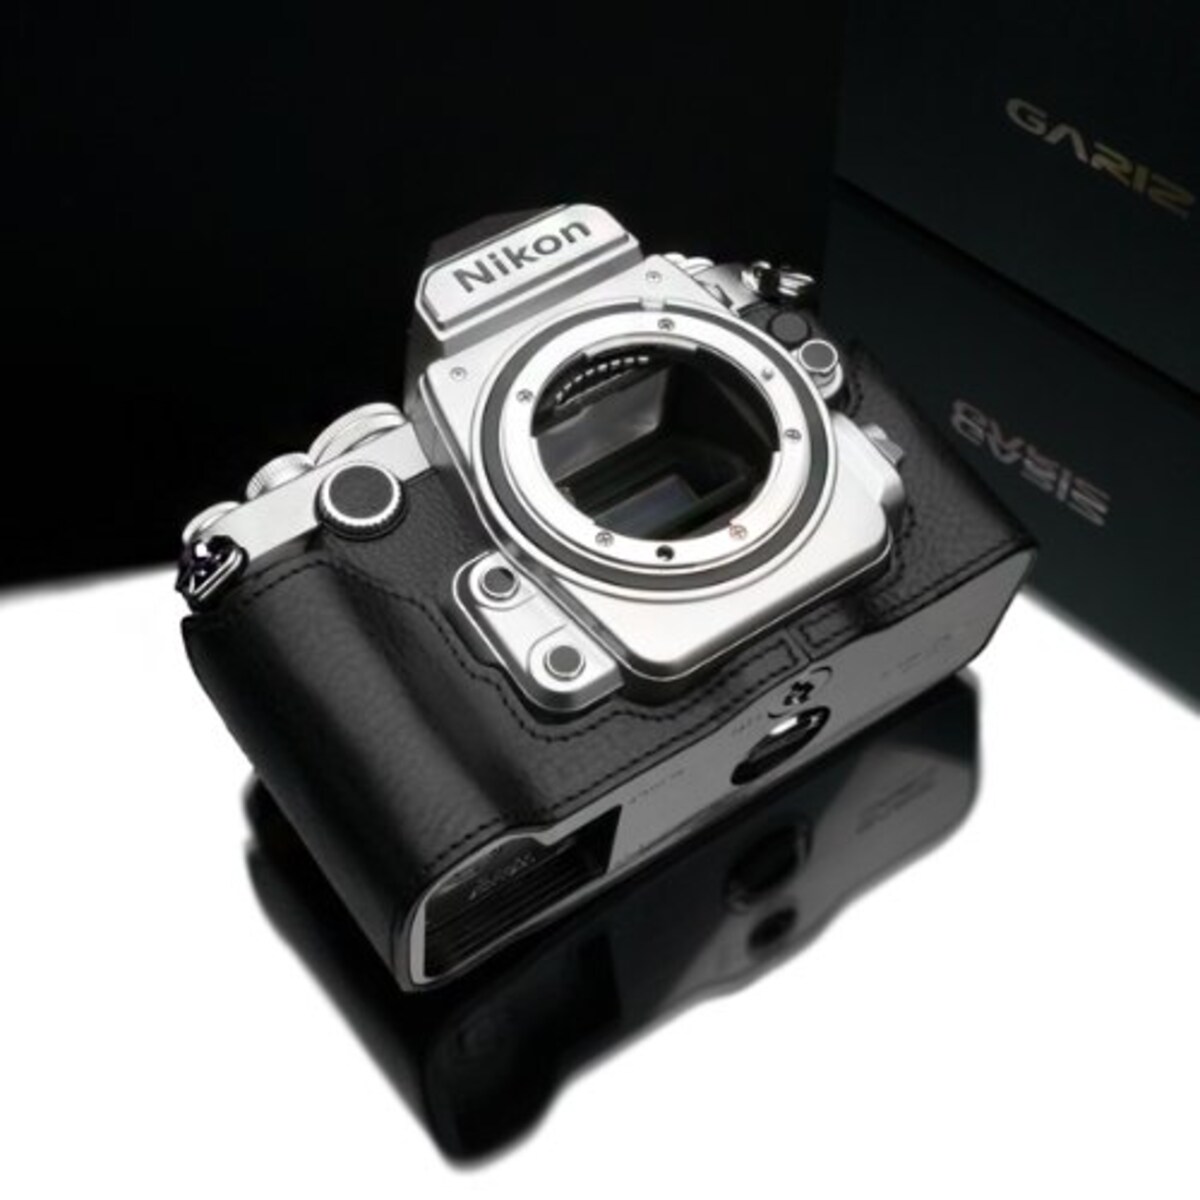  GARIZ Nikon Df用 本革カメラケース Gun Shot Ring付 XS-CHDFBK ブラック画像5 